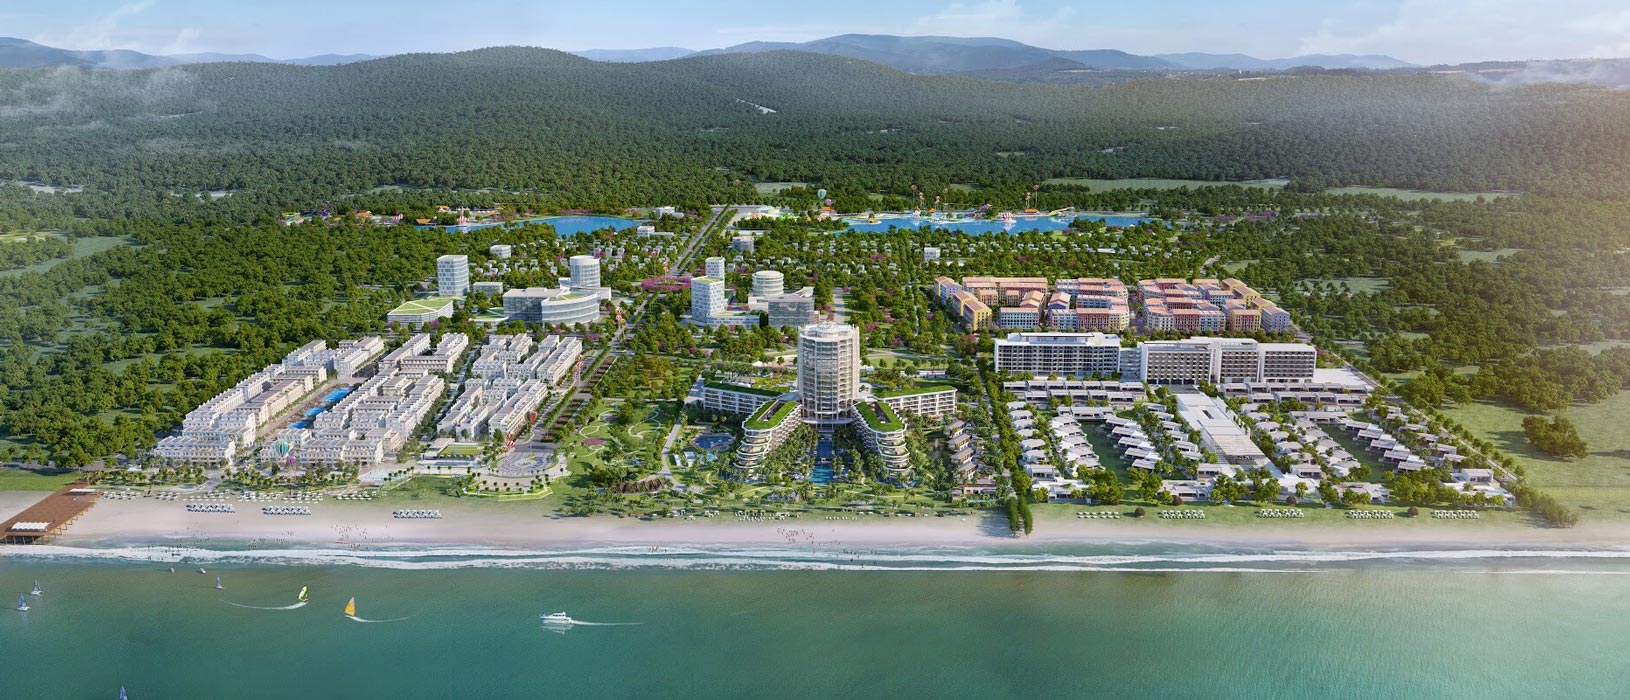 Khu phức hợp dự án Marina Phu Quoc được quy hoạch bài bản rộng 155 ha tại Phú Quốc